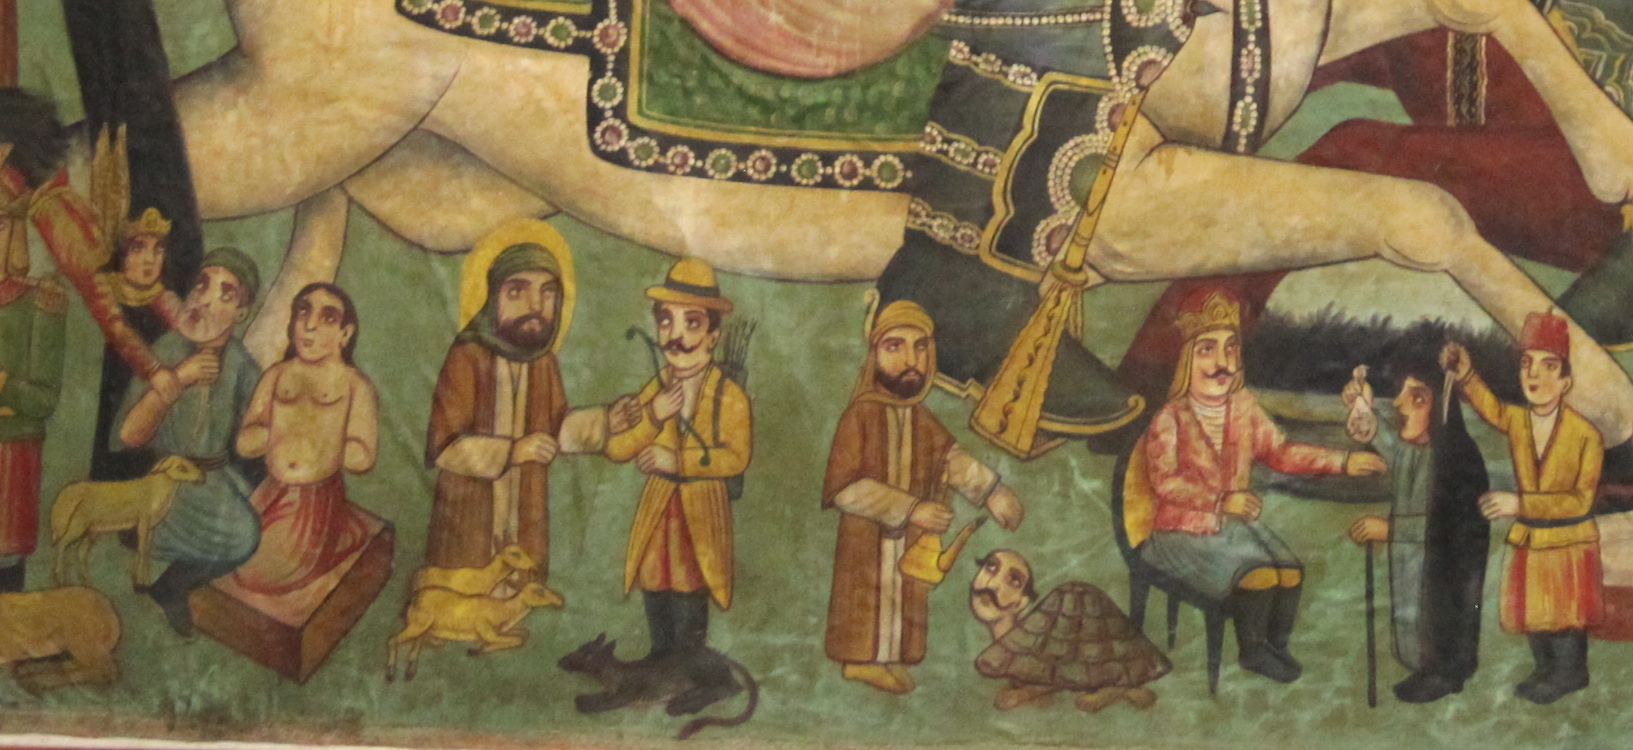 داستان‌های جذاب مذهبی در تابلوی نقاشی قهوه‌خانه‌ای موزه گرمابه سمنان